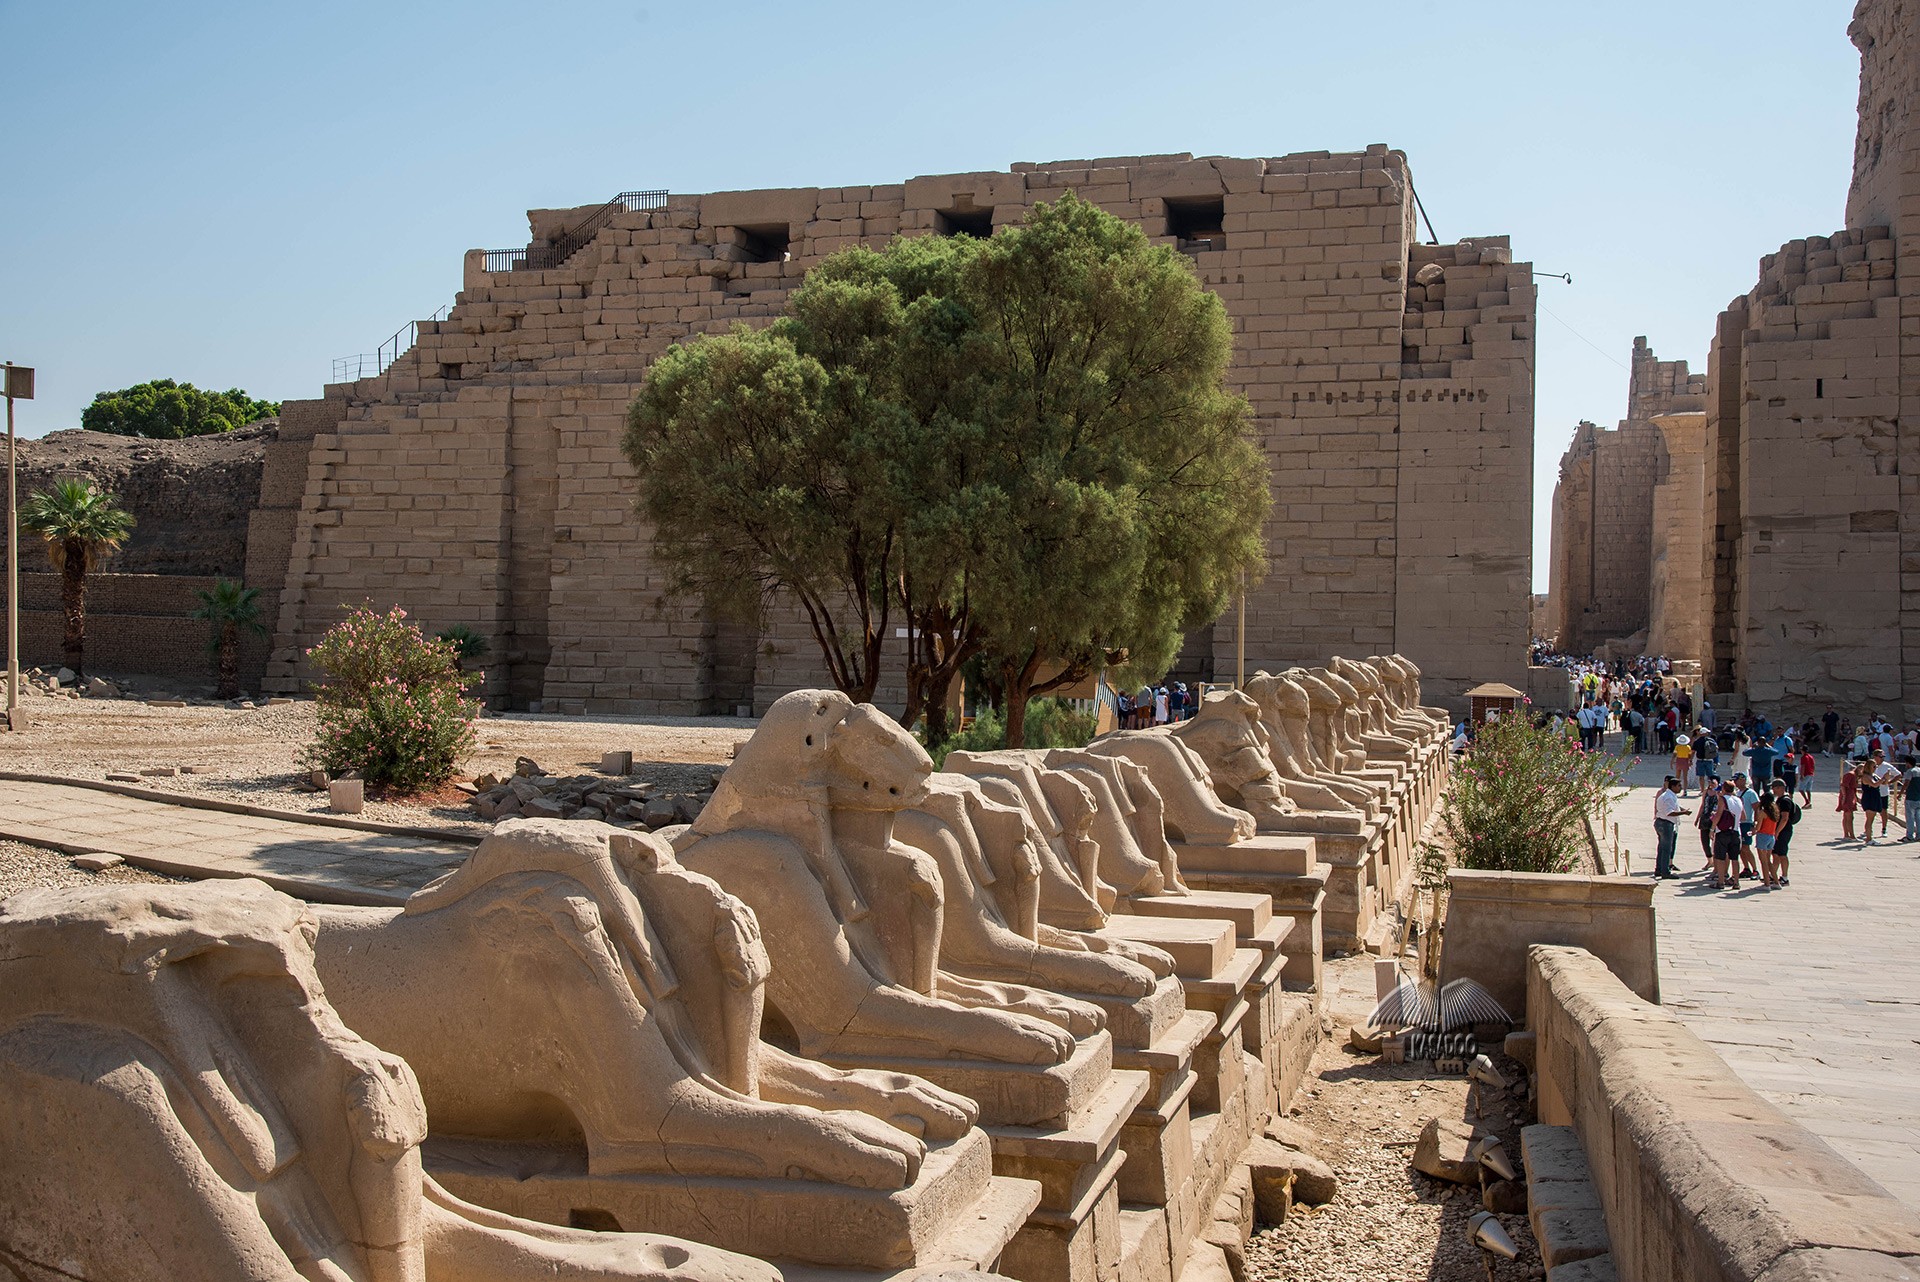 Sculptures in Karnak Temple